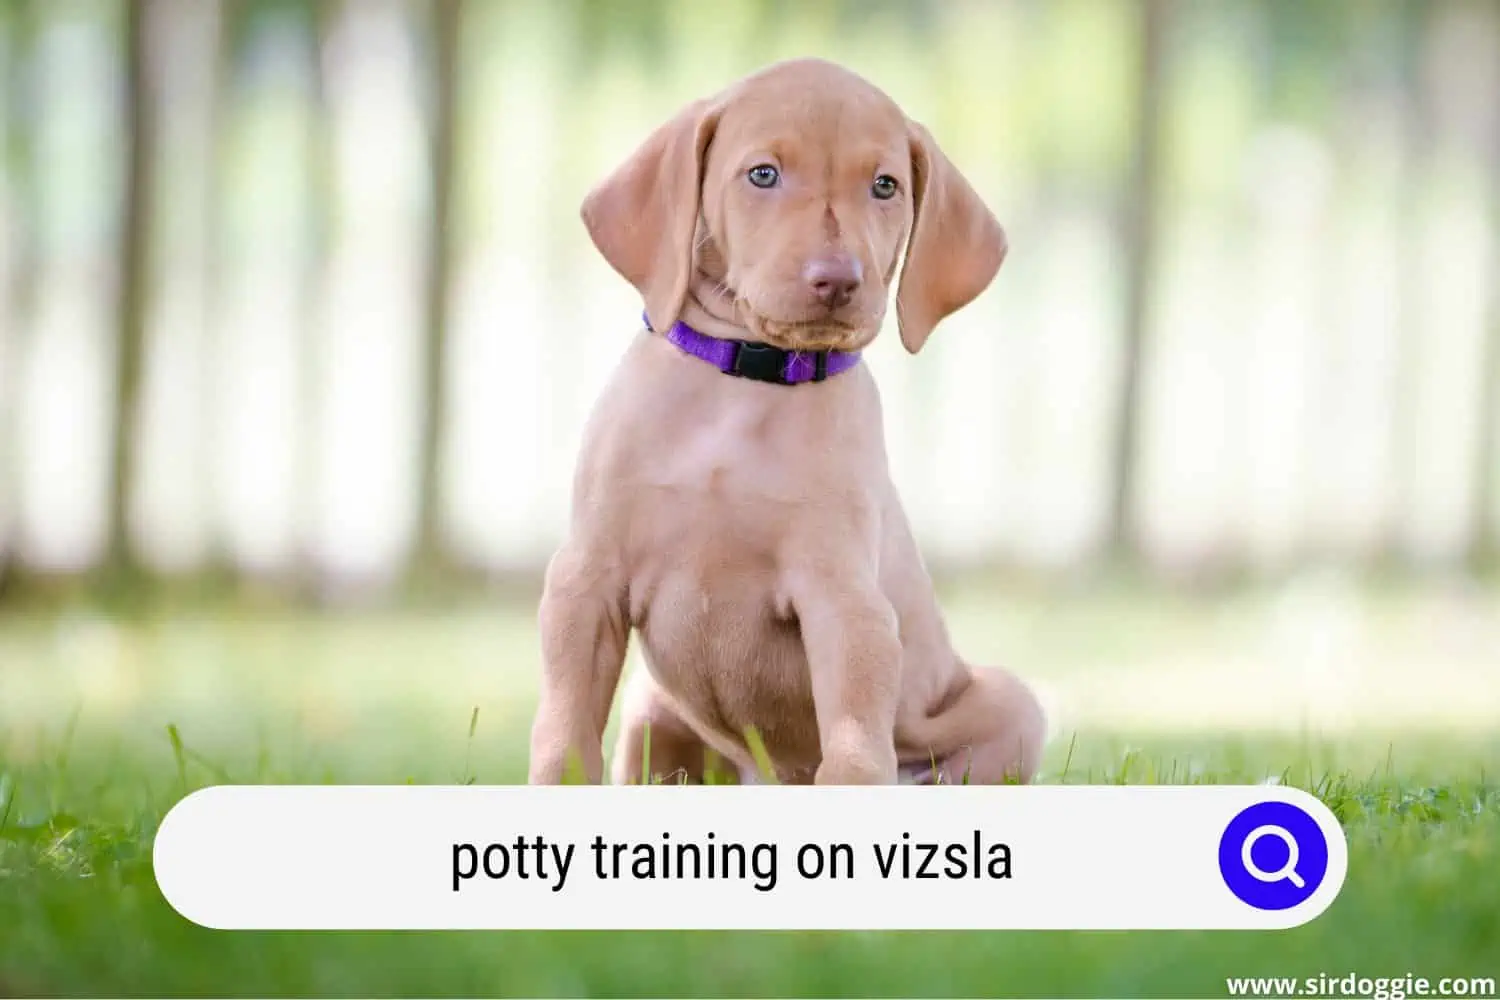 Vizsla dog in a field for potty training